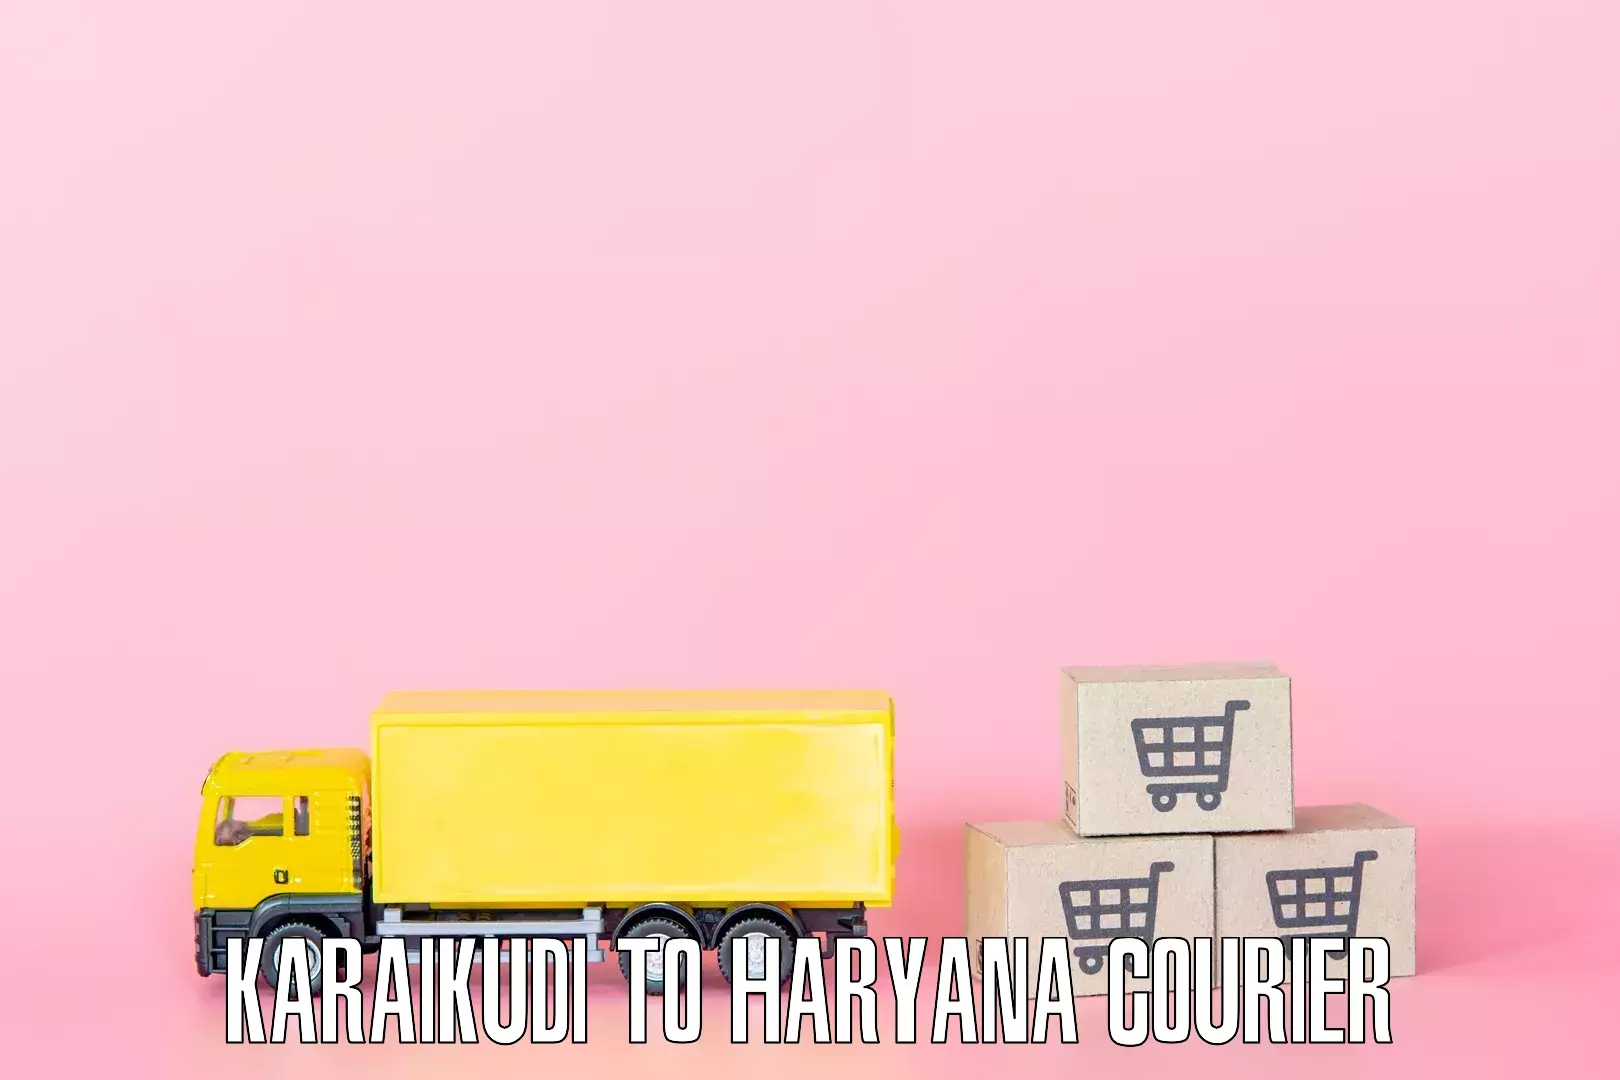 Professional home goods transport Karaikudi to Narwana